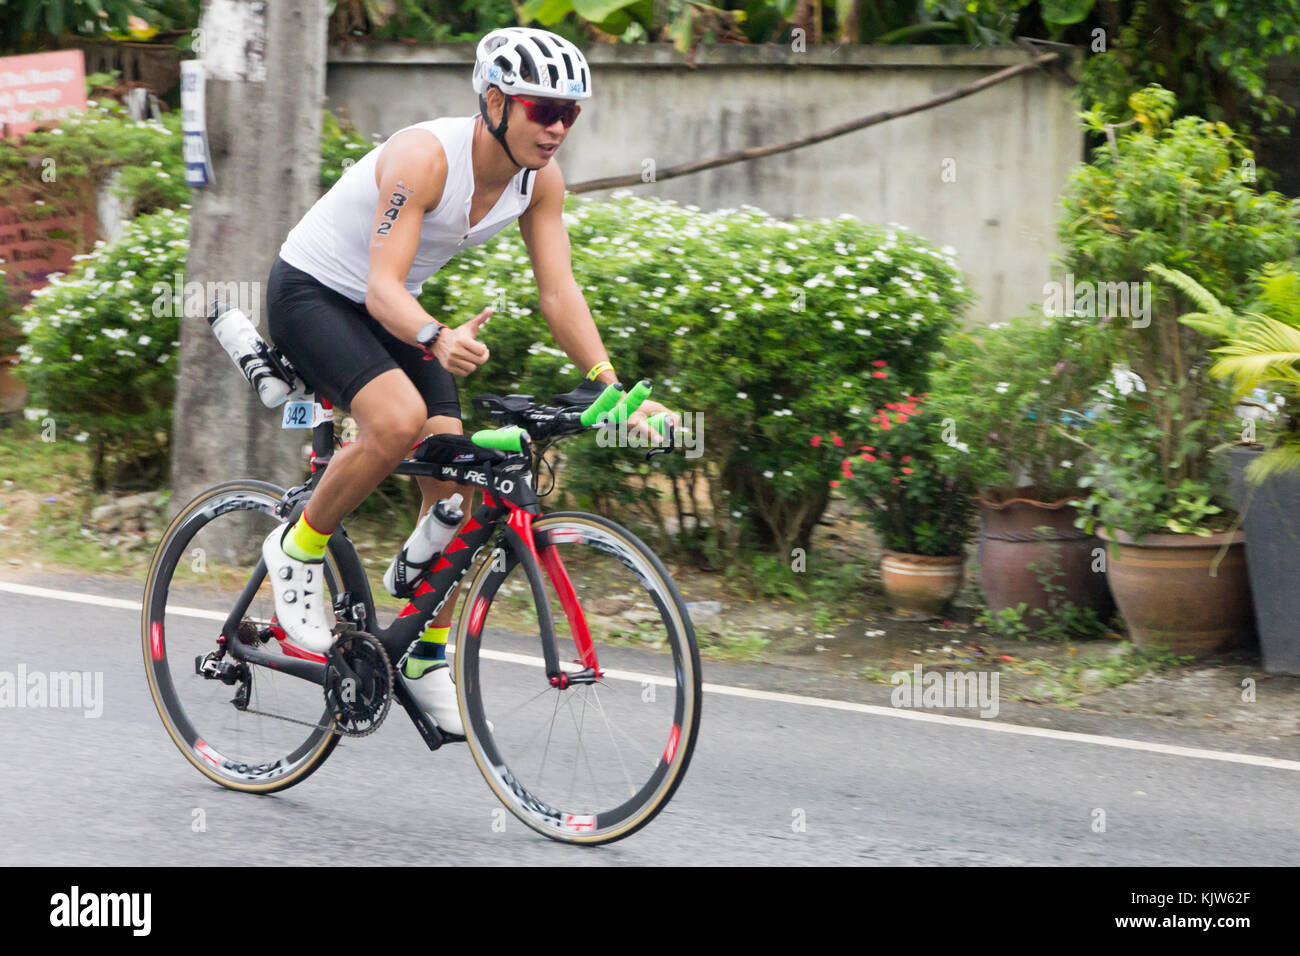 Thailand. 26 Nov, 2017. Ein Wettbewerber in den vordersten Ironman 70.3 Thailand 26. November 2017 - Radrennen Bühne Credit: Kevin hellon/Alamy leben Nachrichten Stockfoto